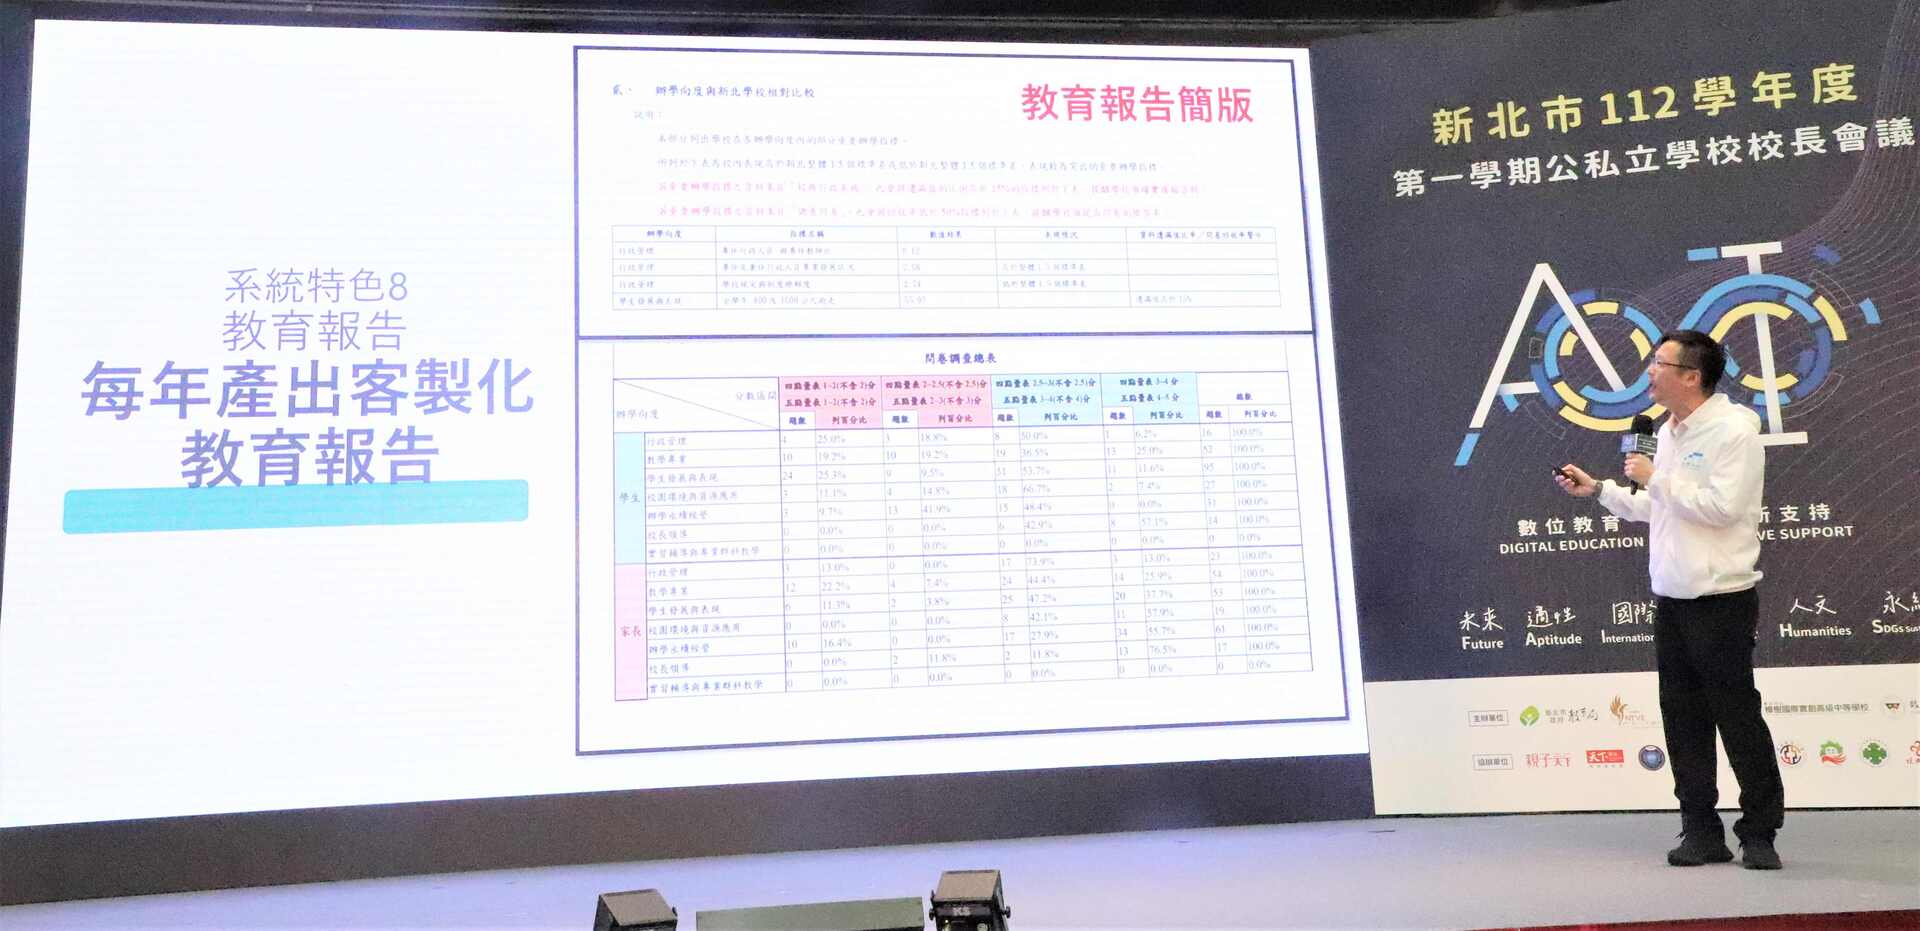 張明文局長說明大數據辦學分析系統-「教育報告與創新支持系統」